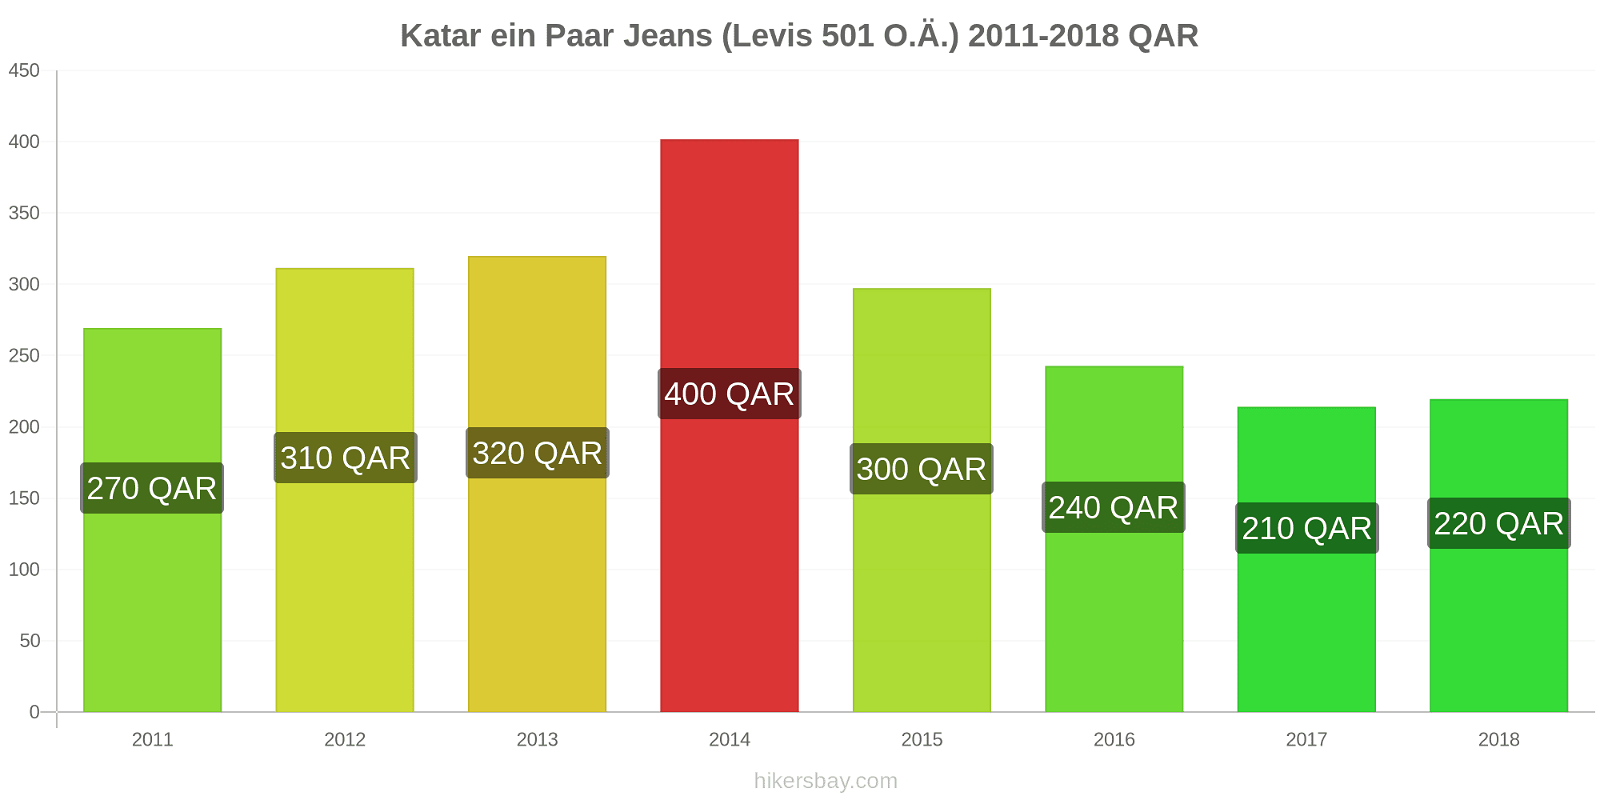 Katar Preisänderungen 1 Paar Jeans (Levis 501 oder ähnlich) hikersbay.com